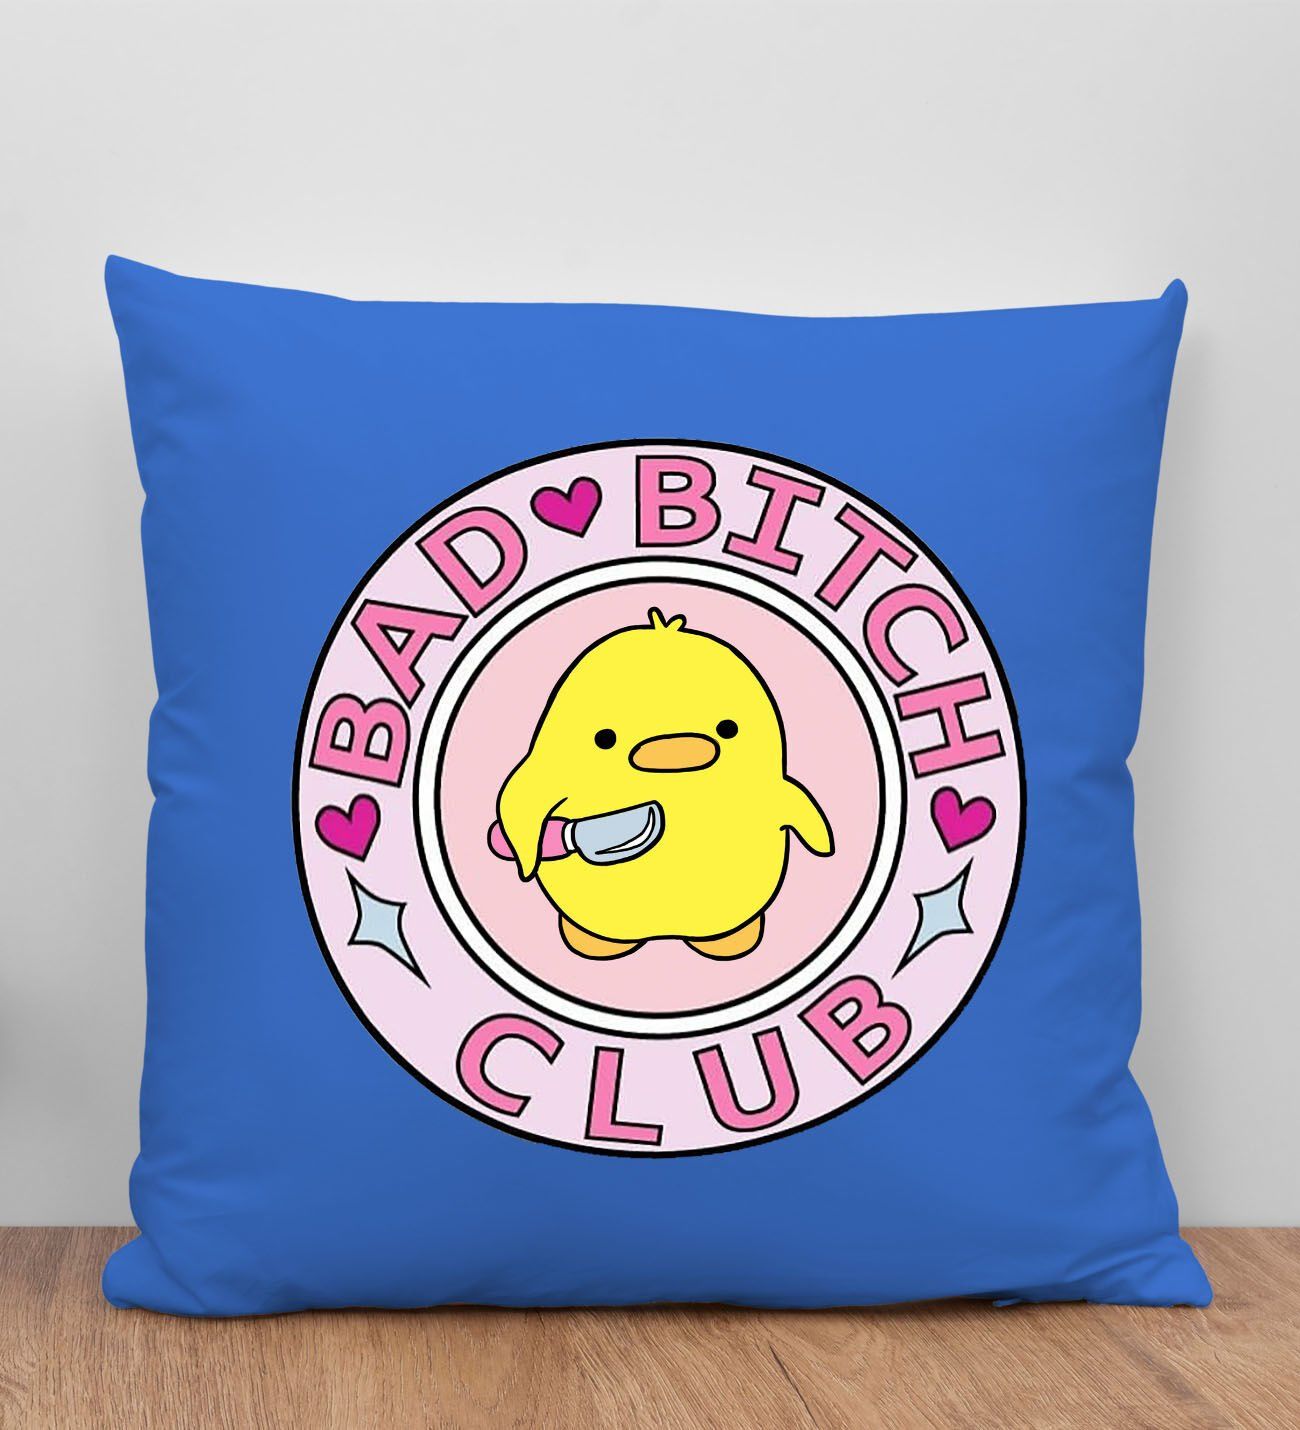 BK Gift Bad Bitch Club Tasarımlı Mavi Kırlent Yastık, Arkadaşa Hediye, Ev Dekorasyonu, Ev Hediyesi-1